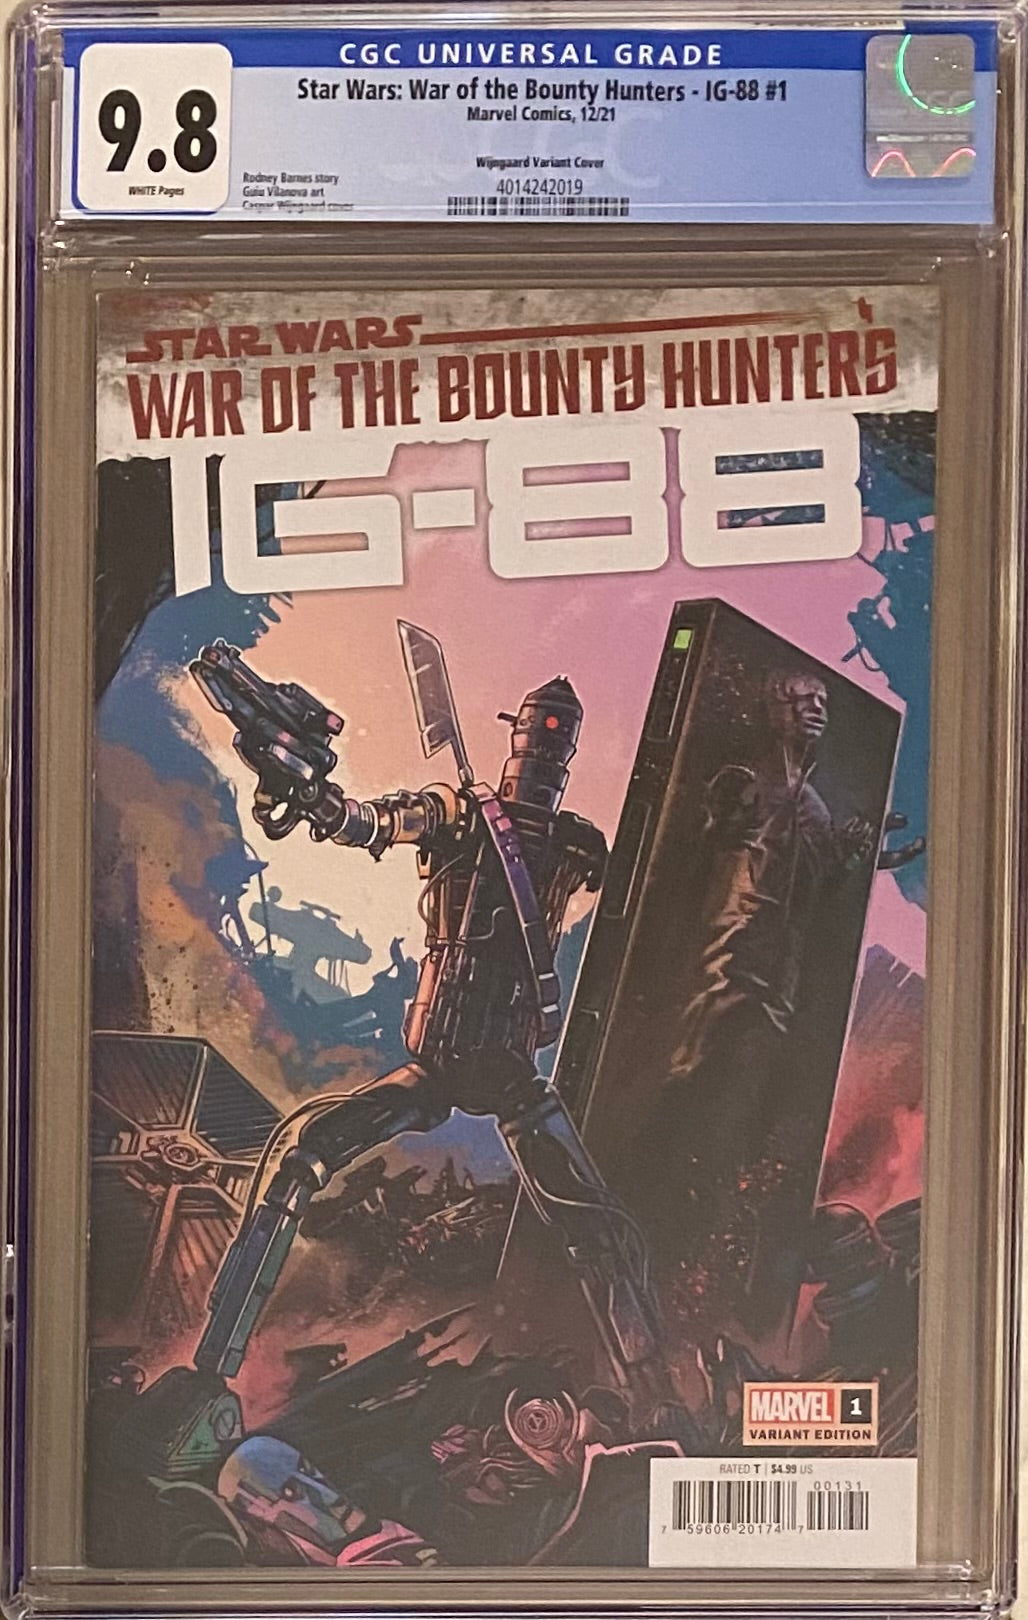 Star Wars: War of the Bounty Hunters - IG-88 #1 Wijngaard Variant CGC 9.8